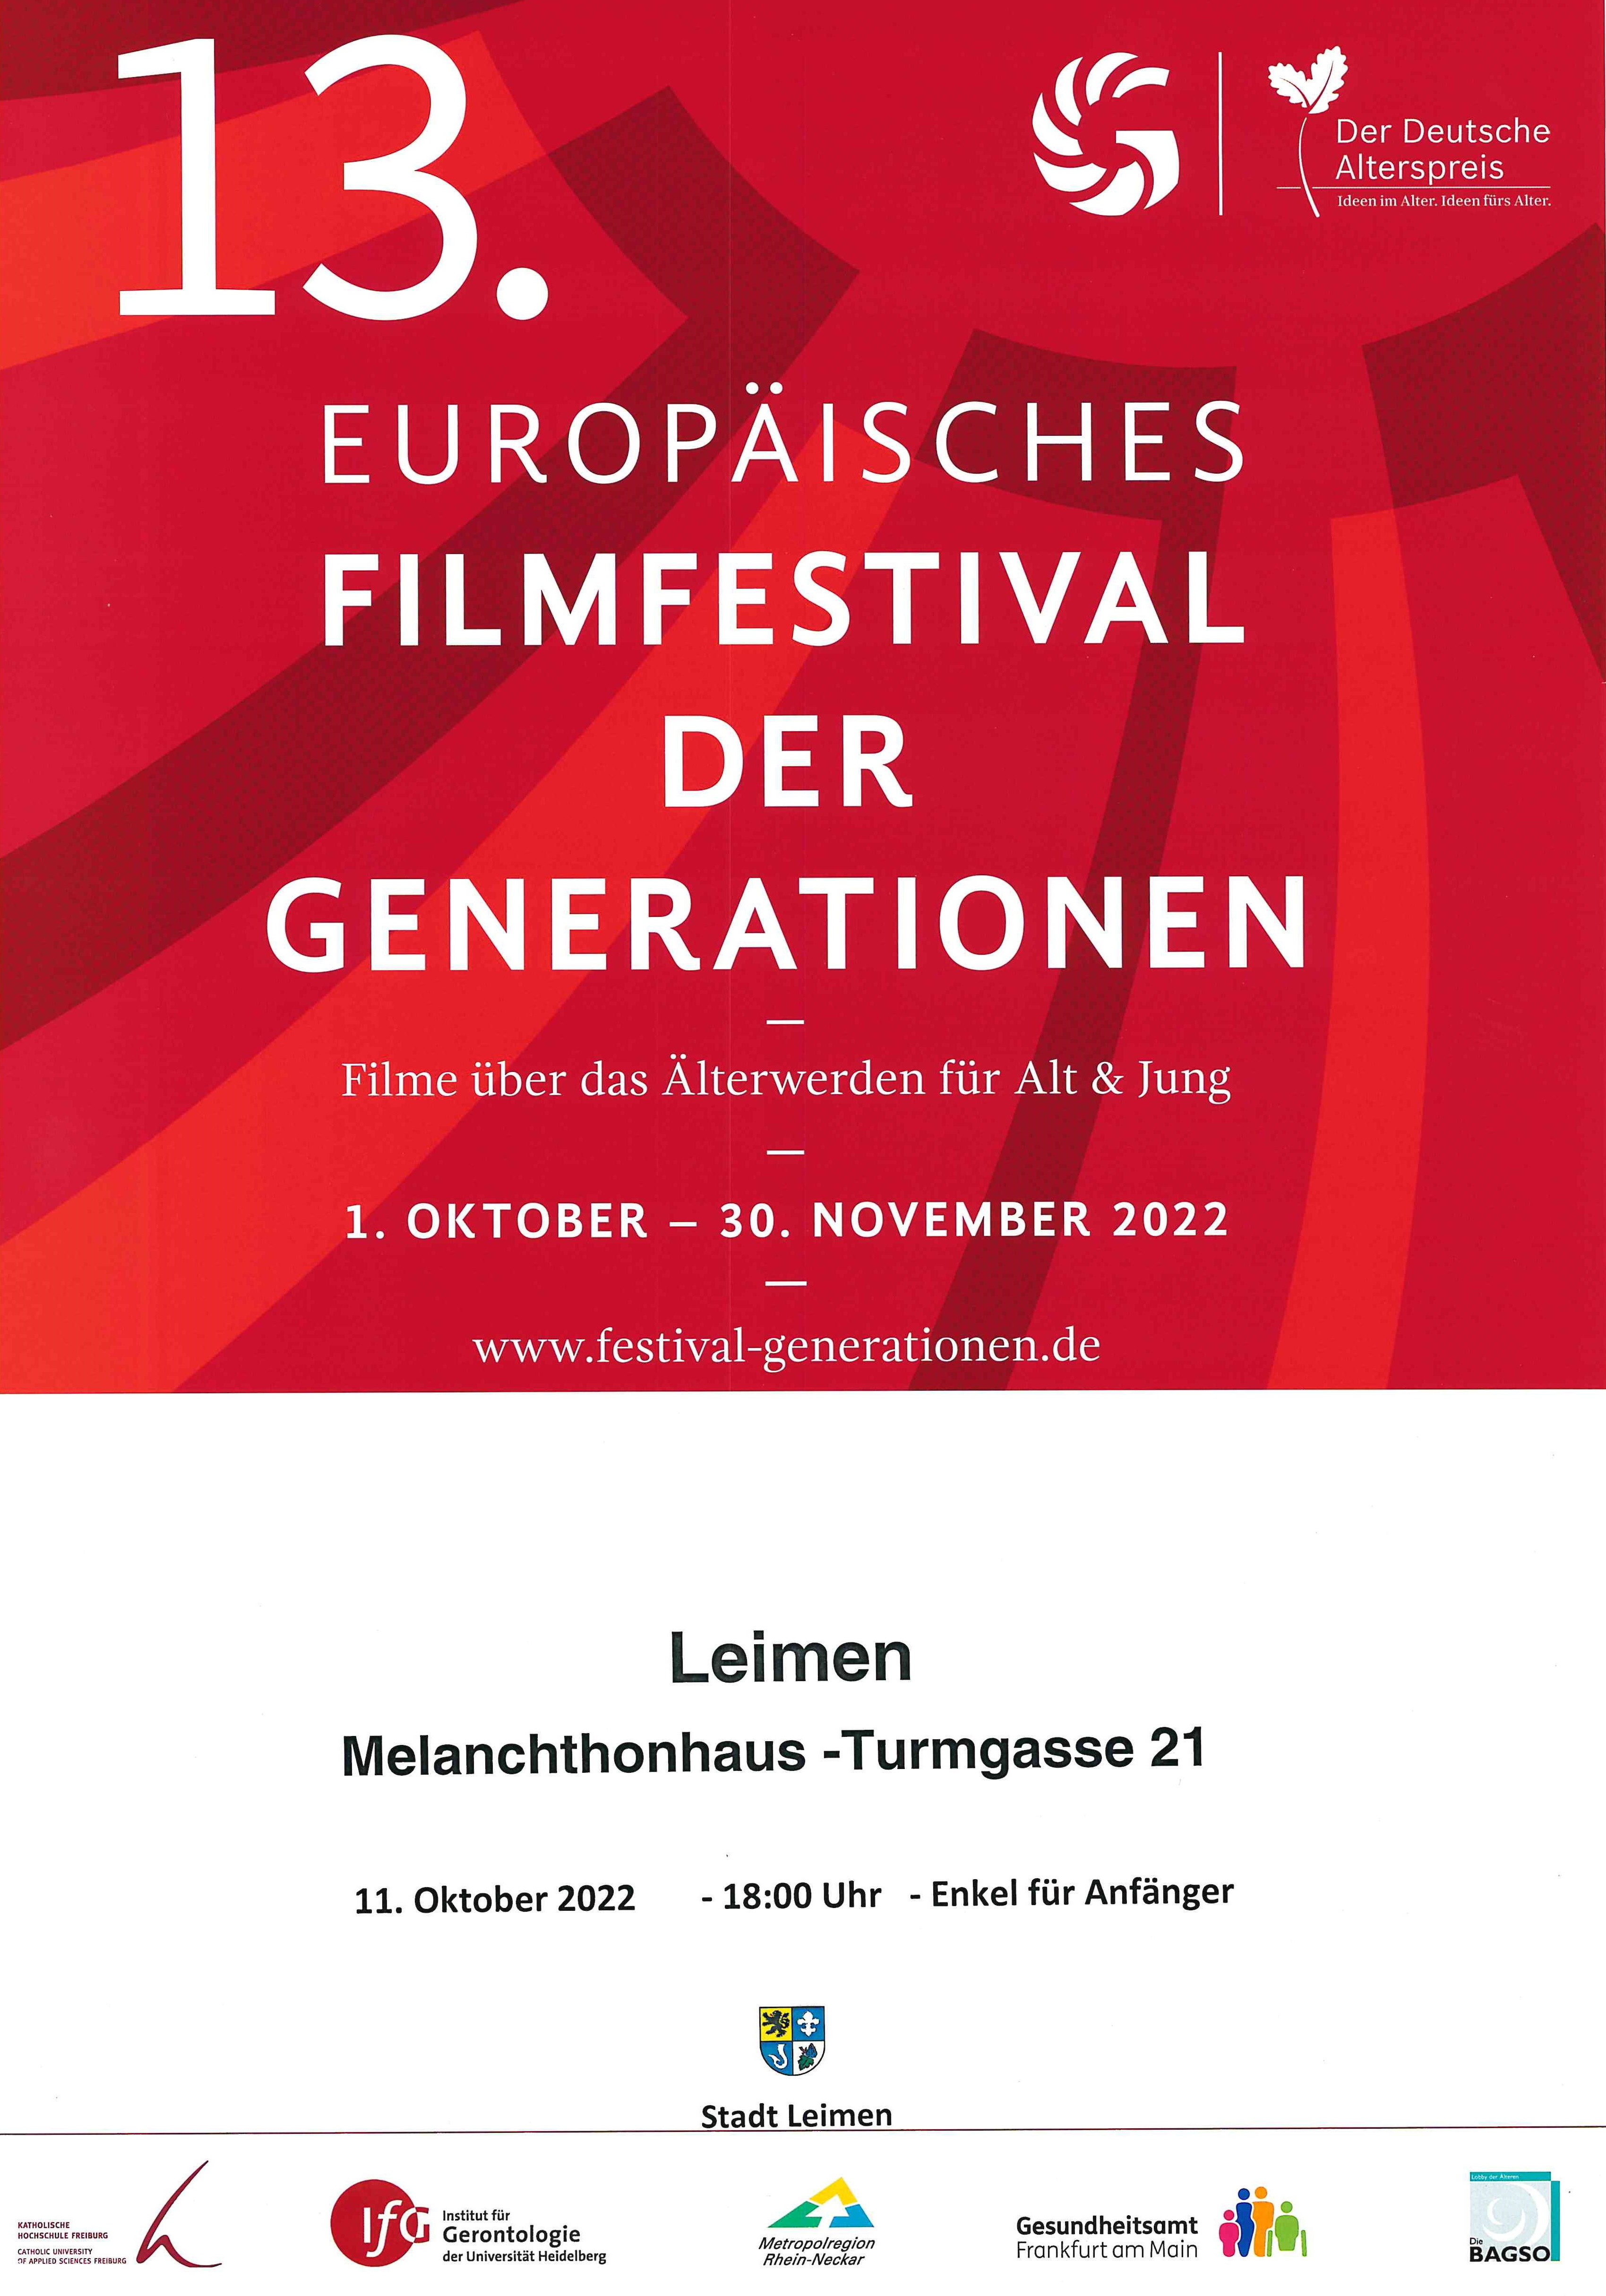  Europäisches Filmfestival der Generationen 